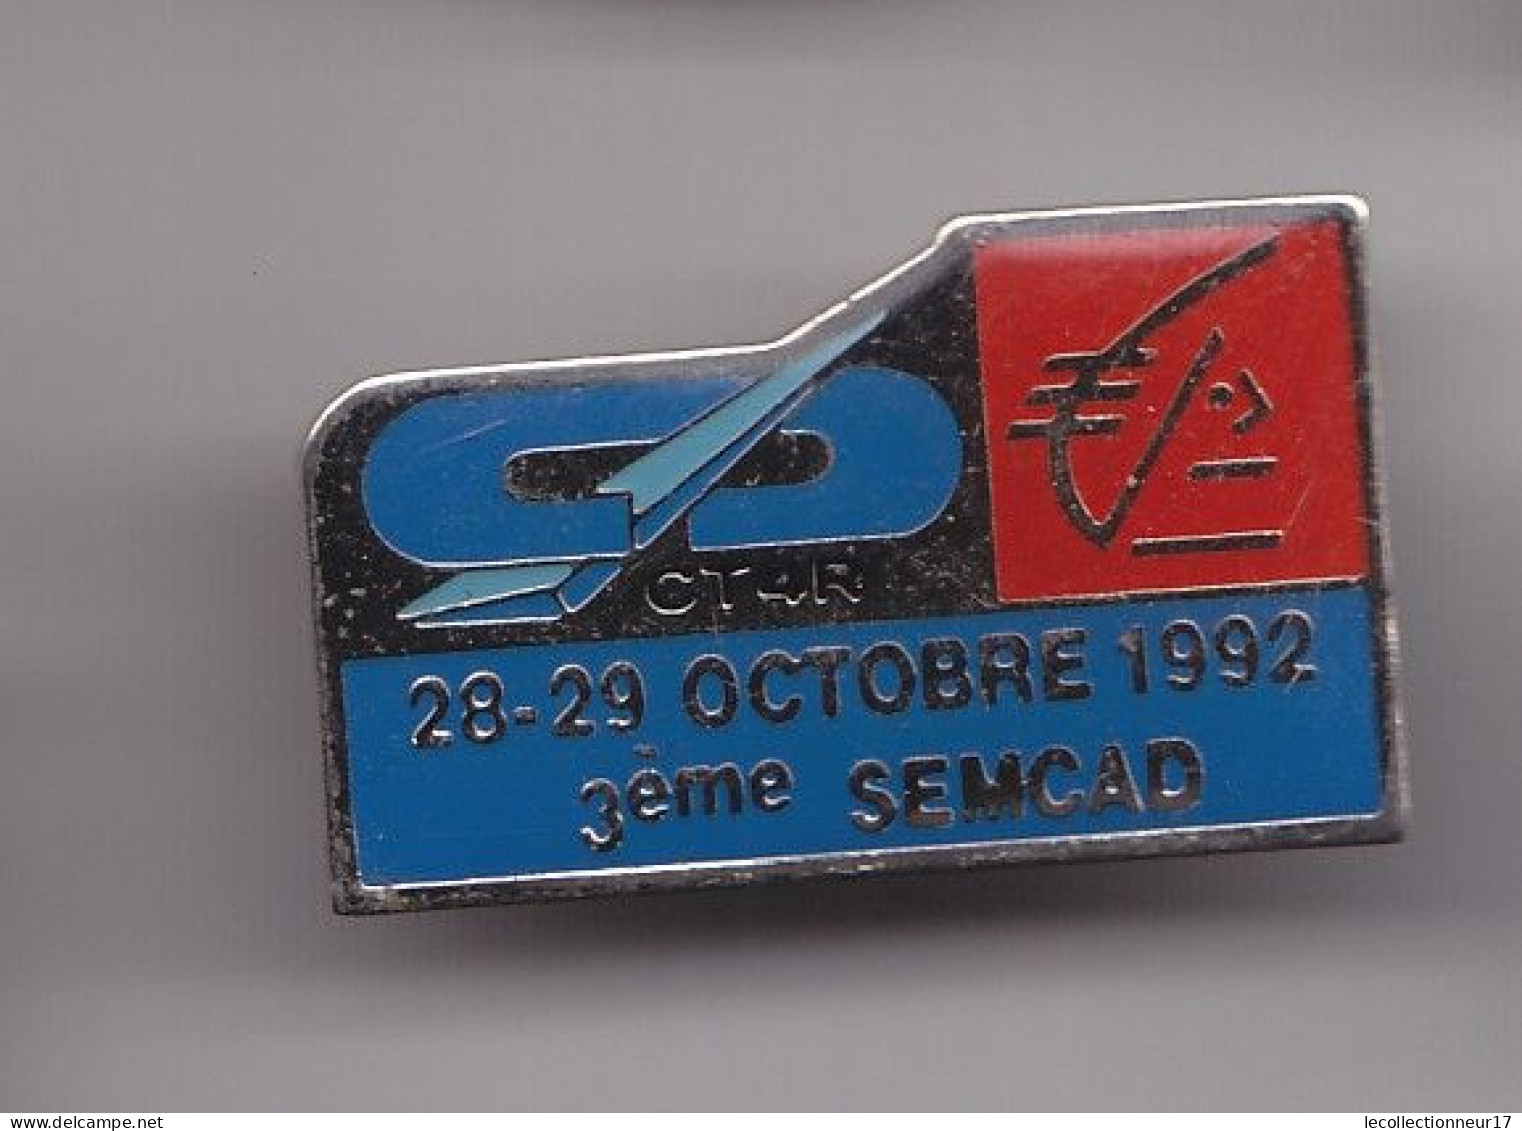 Pin's  Caisse D' Epargne Ecureuil CT4R 28-29 Octobre 1992 3ème Semcad Réf 7498JL - Banken